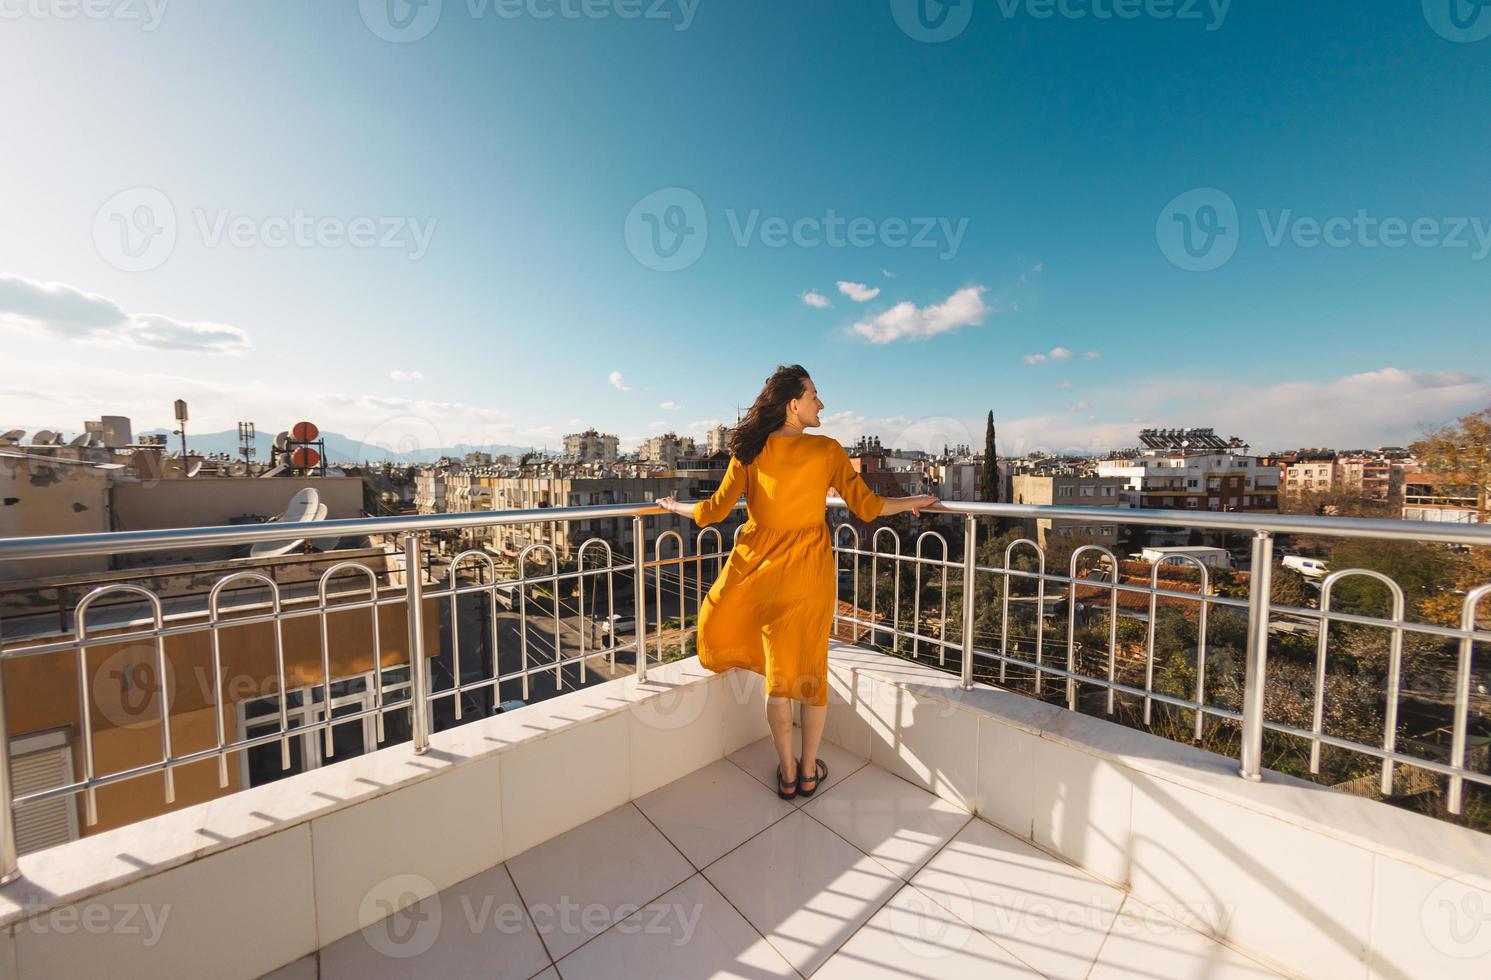 uma garota atraente olha para a cidade e o vento infla seu vestido foto